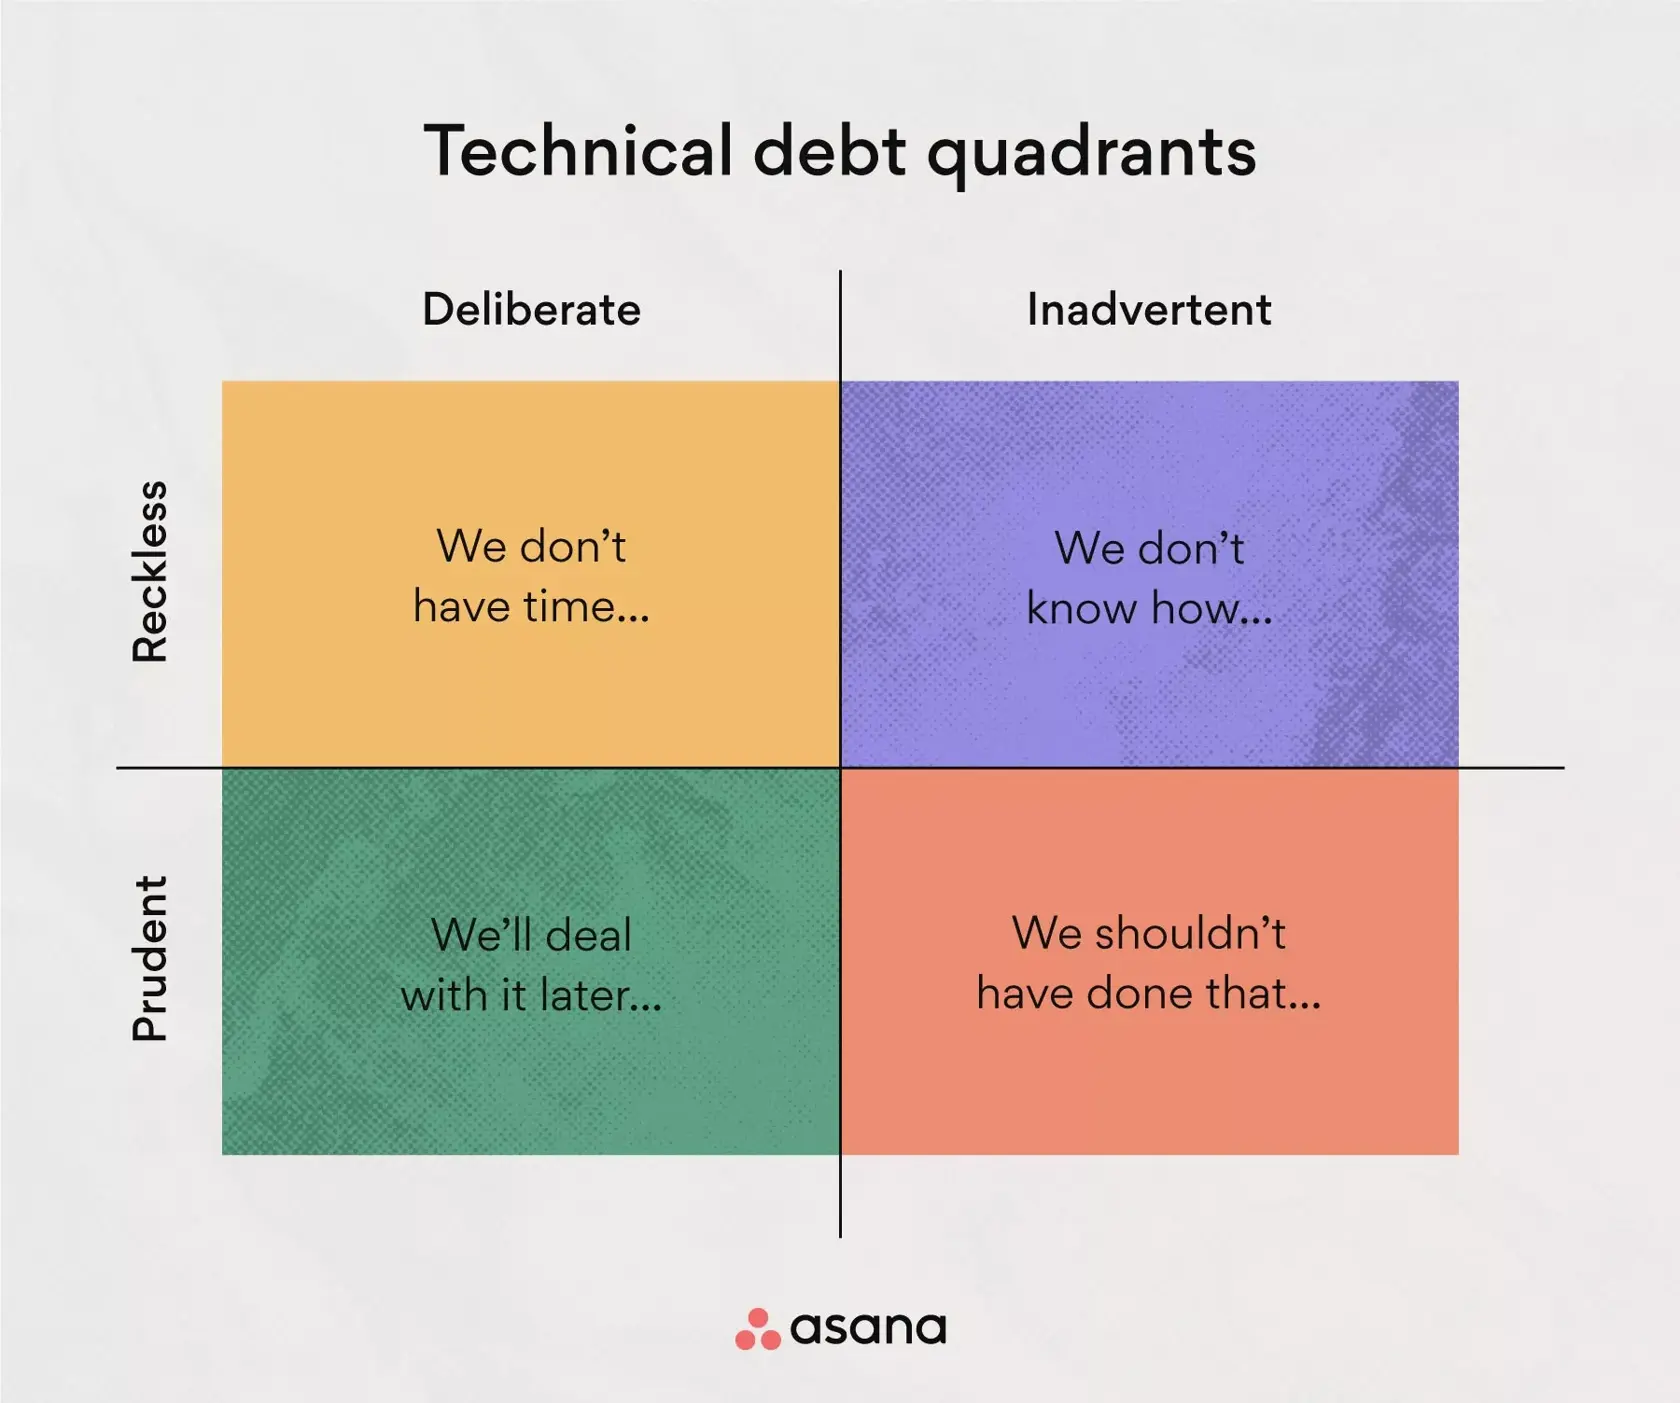 The technical debt quadrants